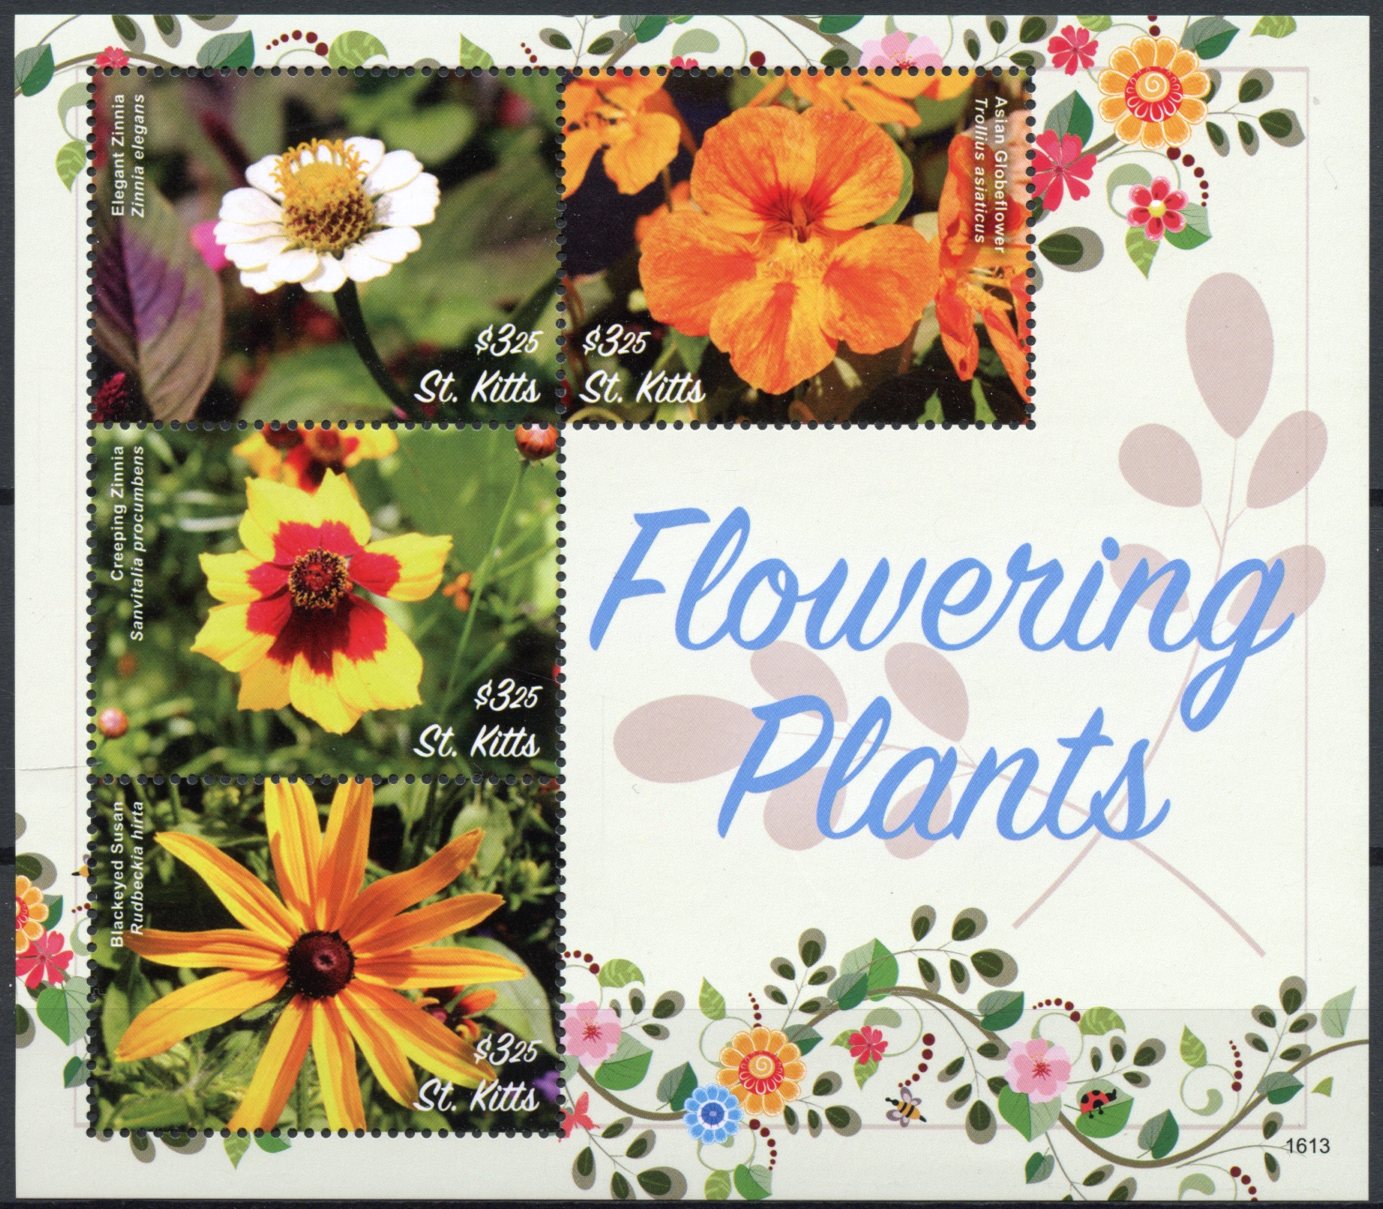 St Kitts 2016 MNH Flowering Plants 4v M/S Zinnia Globeflower Flowers Stamps